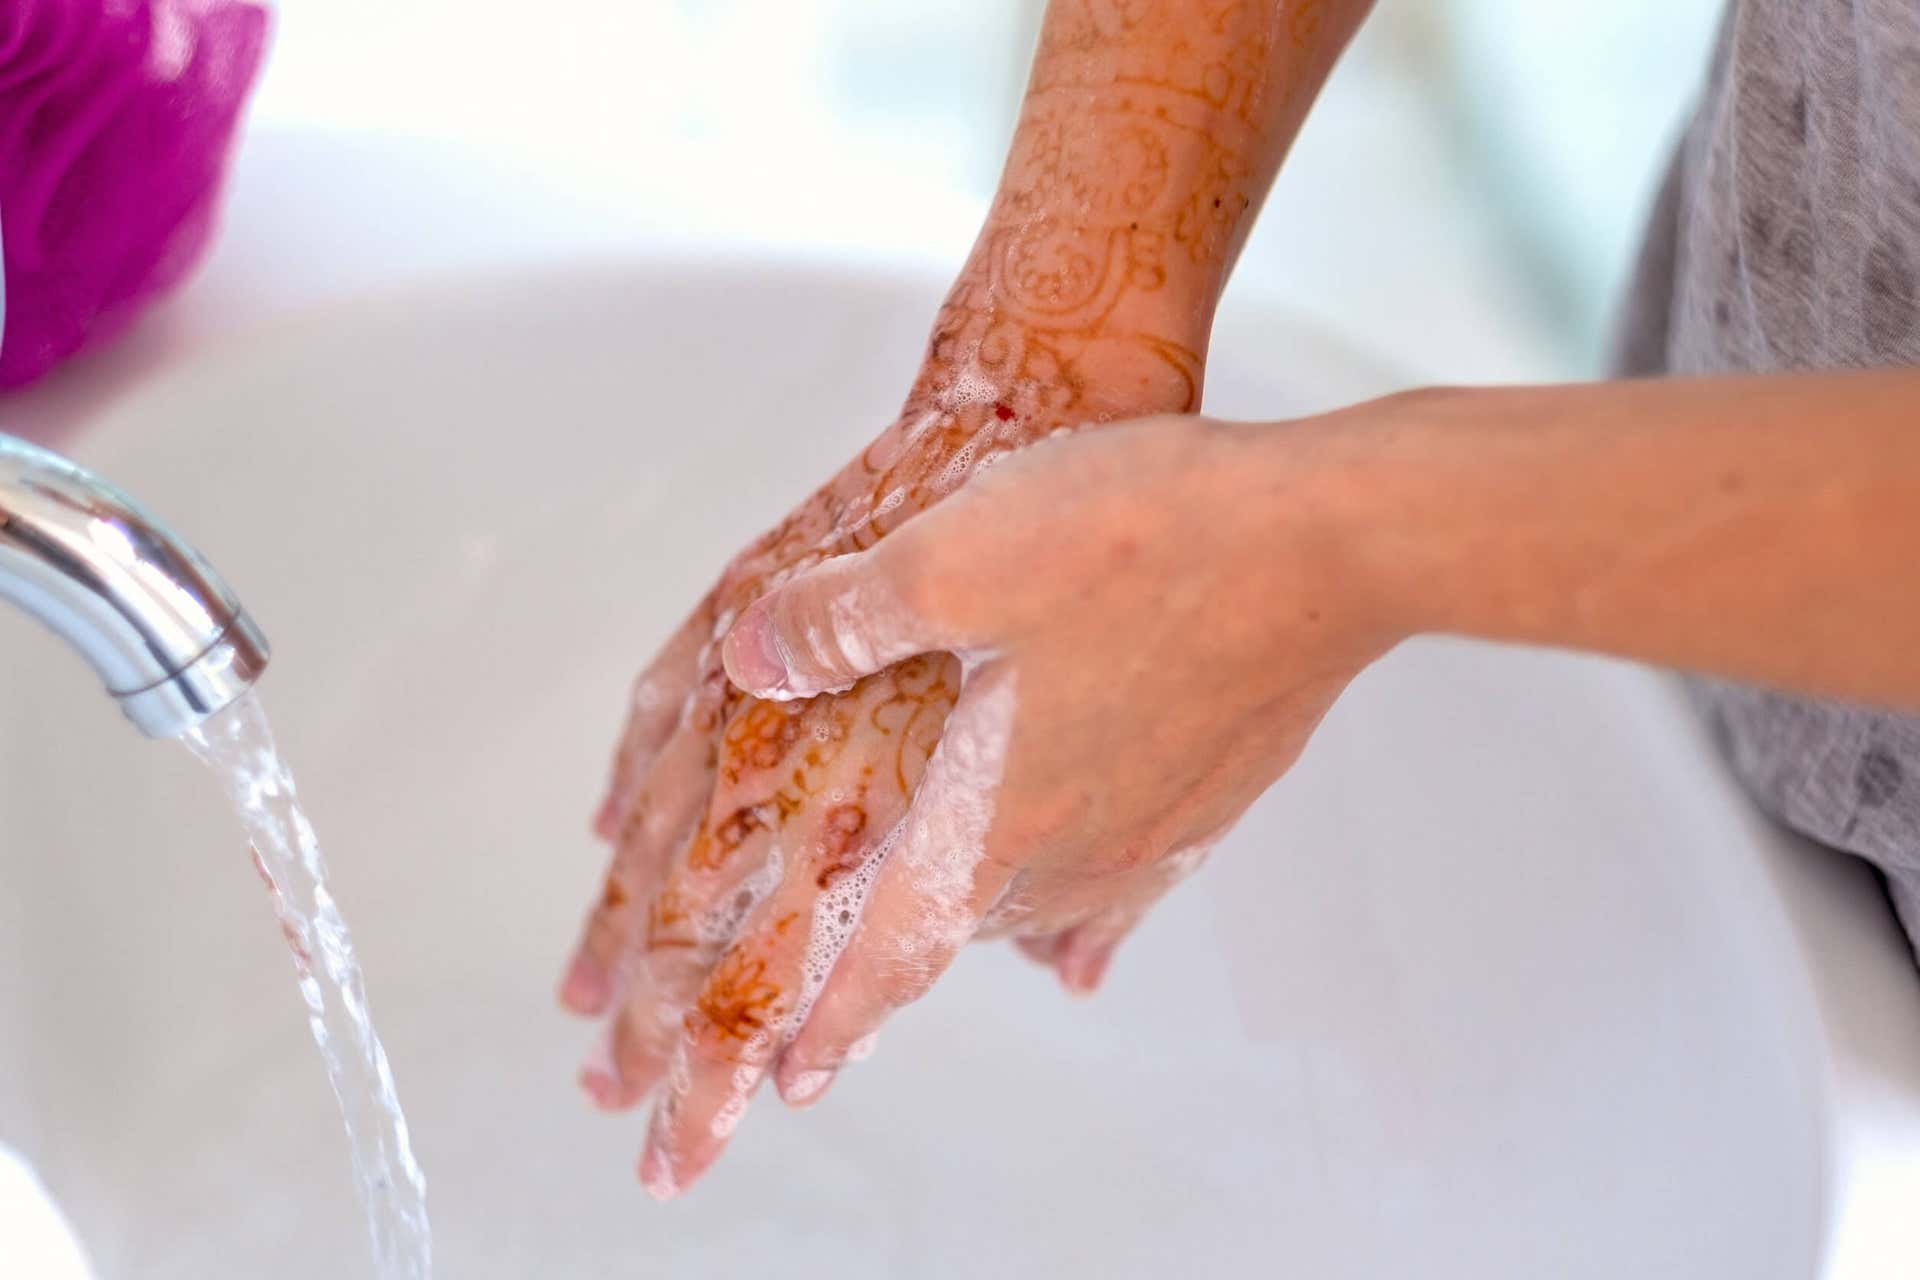 Lavado de manos en la dermatitis.